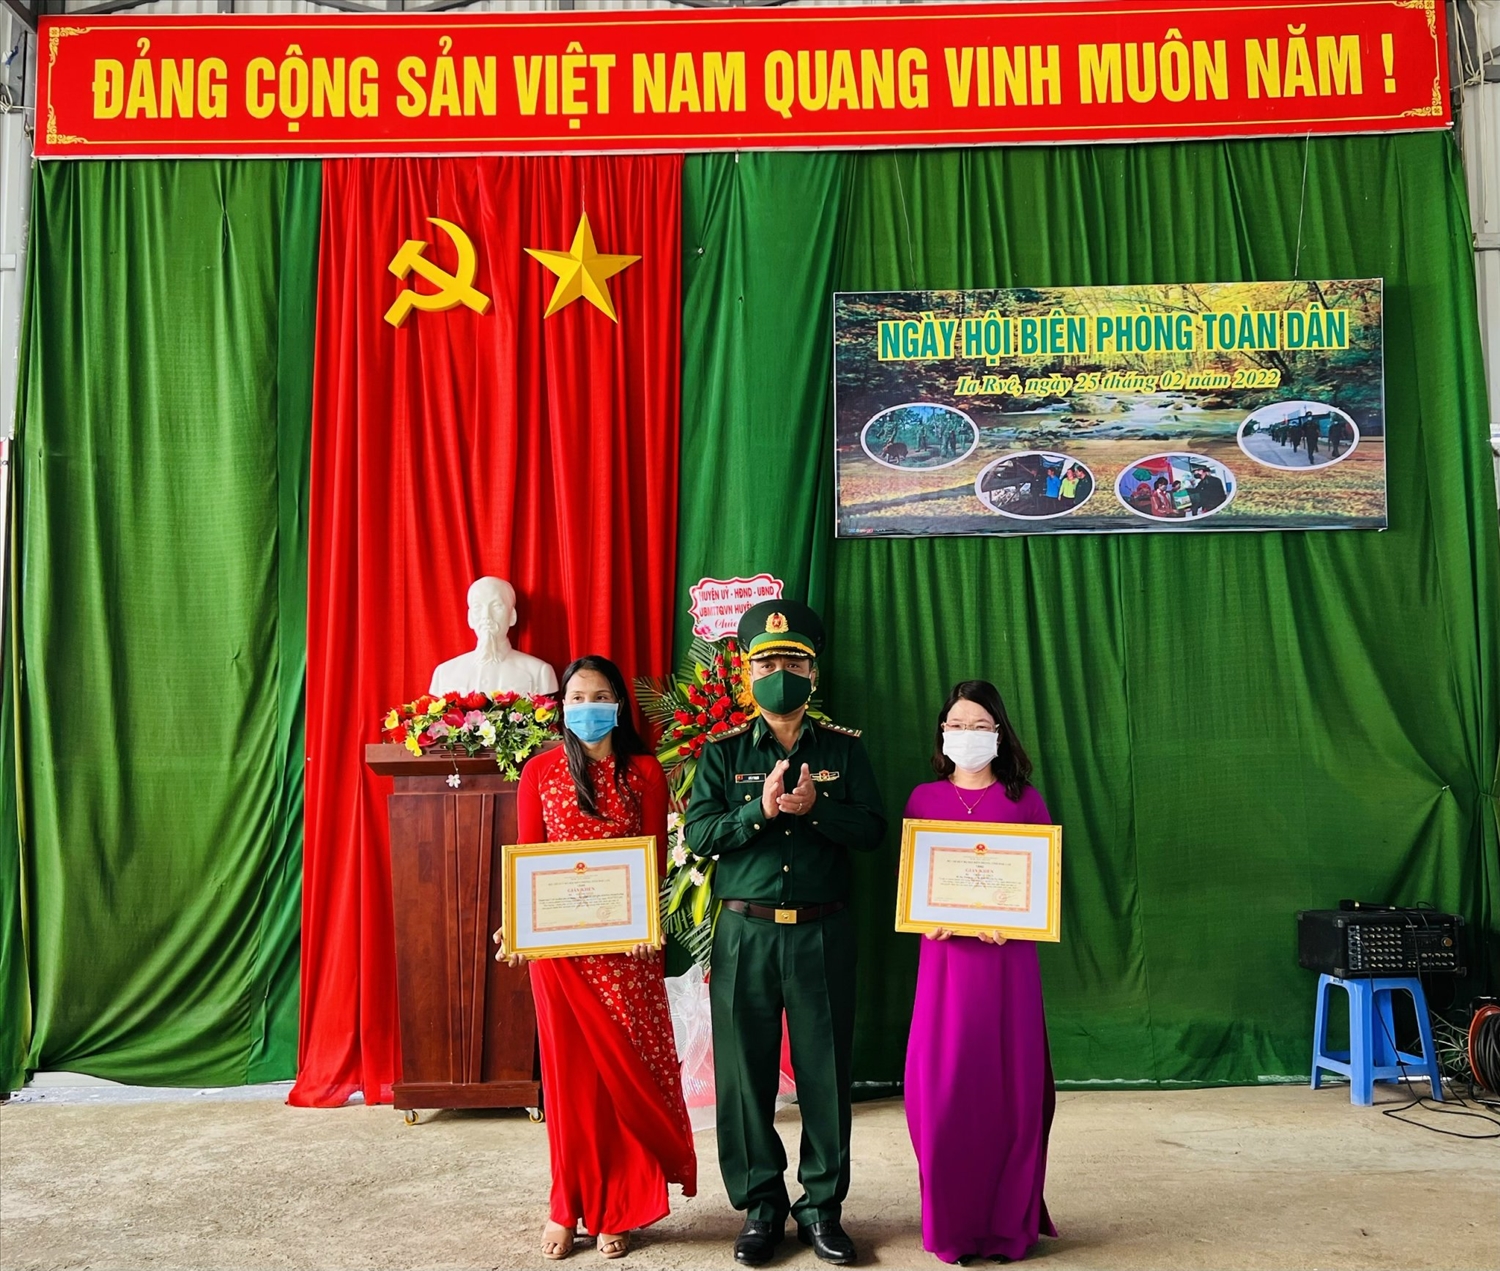 Lãnh đạo Bộ Chỉ huy Bộ đội Biên phòng tỉnh Đắk Lắk khen tặng cá nhân có thành tích xuất sắc trong phong trào toàn dân bảo vệ chủ quyền lãnh thổ, an ninh biên giới quốc gia